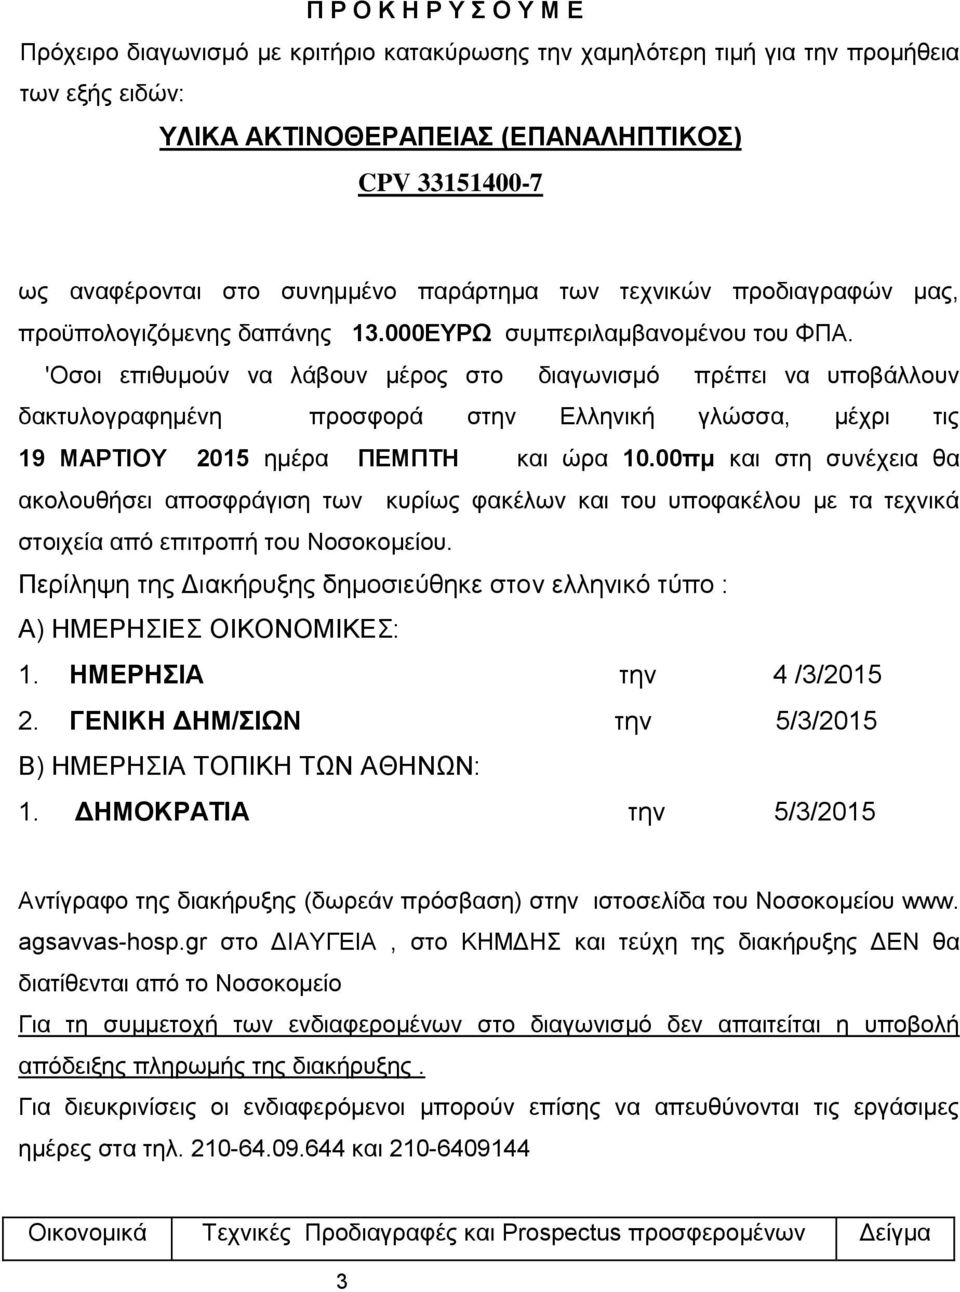 'Οσοι επιθυμούν να λάβουν μέρος στο διαγωνισμό πρέπει να υποβάλλουν δακτυλογραφημένη προσφορά στην Ελληνική γλώσσα, μέχρι τις 19 ΜΑΡΤΙΟΥ 2015 ημέρα ΠΕΜΠΤΗ και ώρα 10.